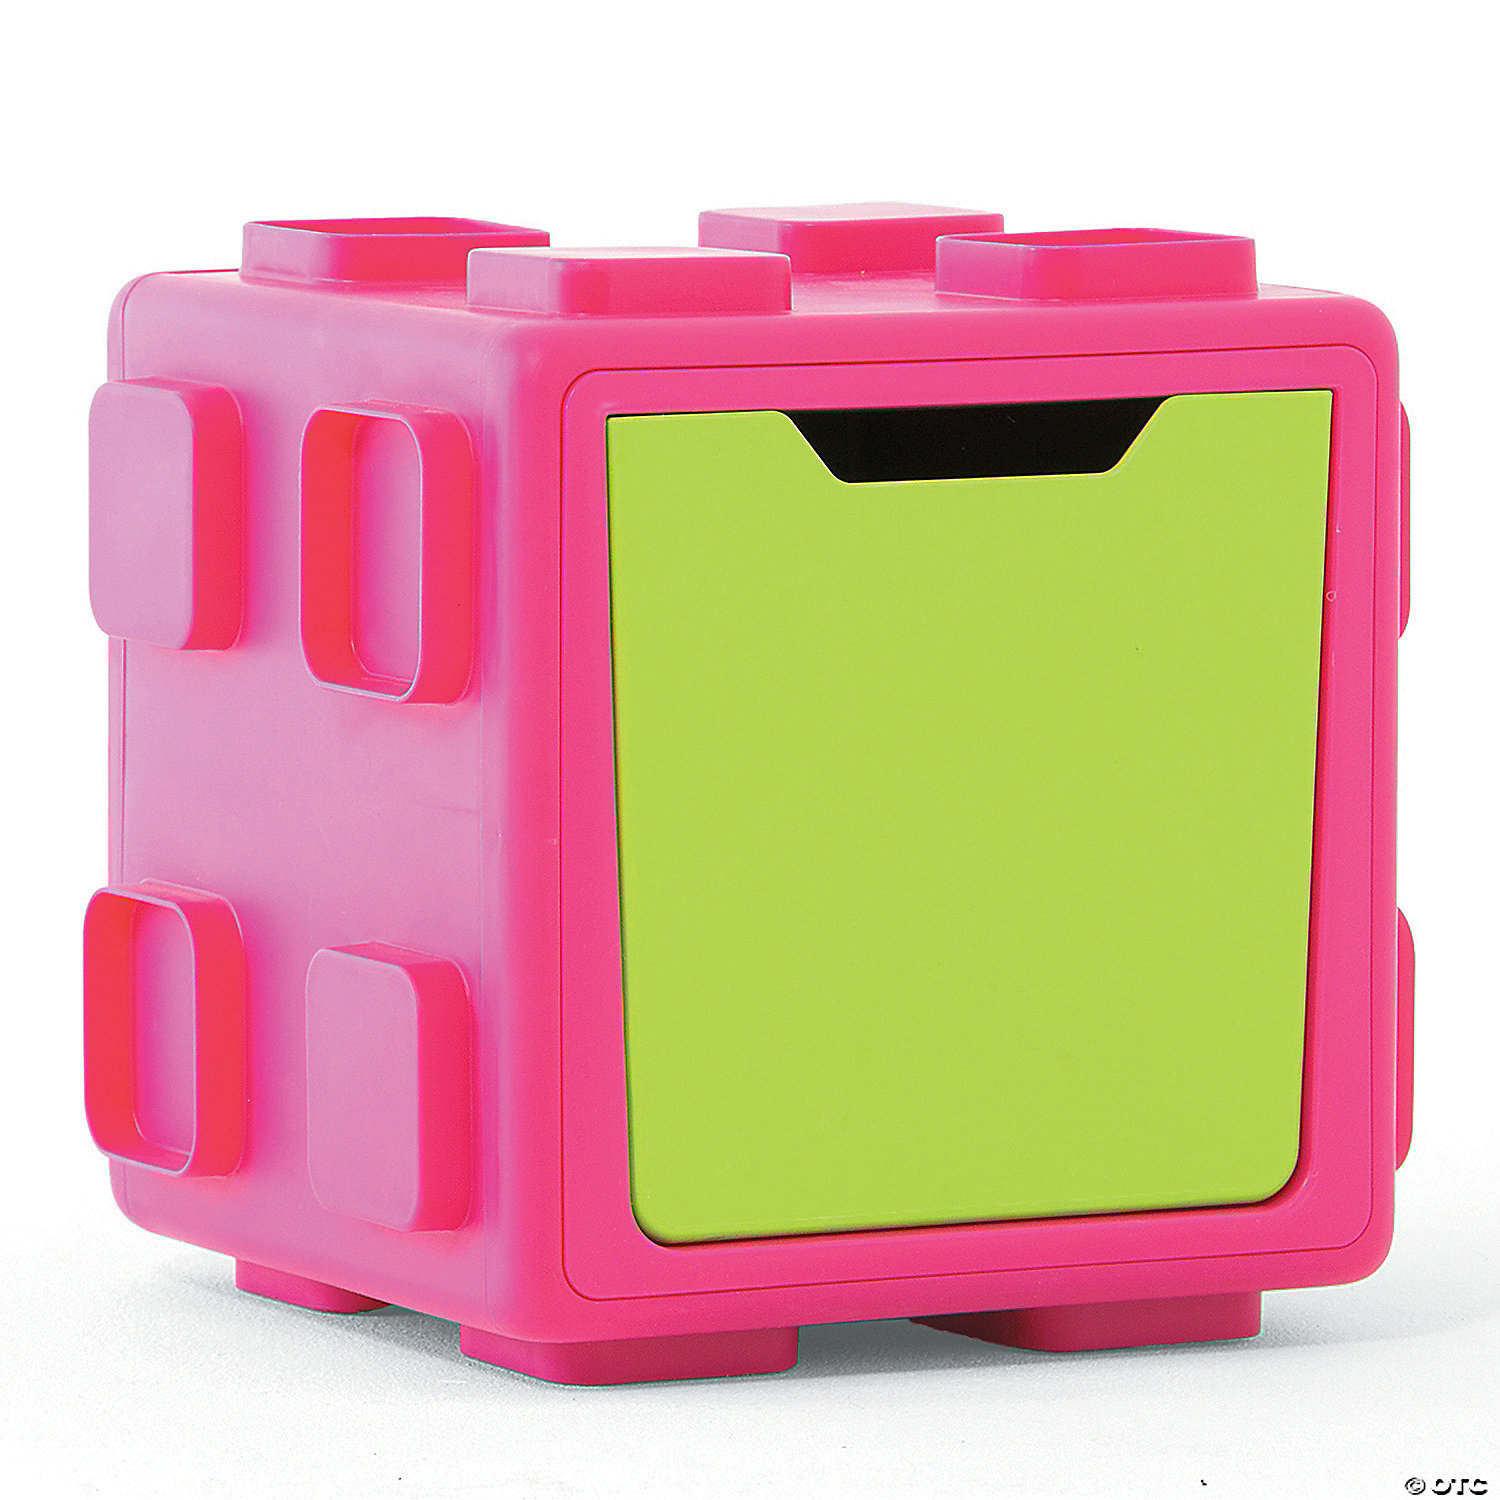 pink toy storage box